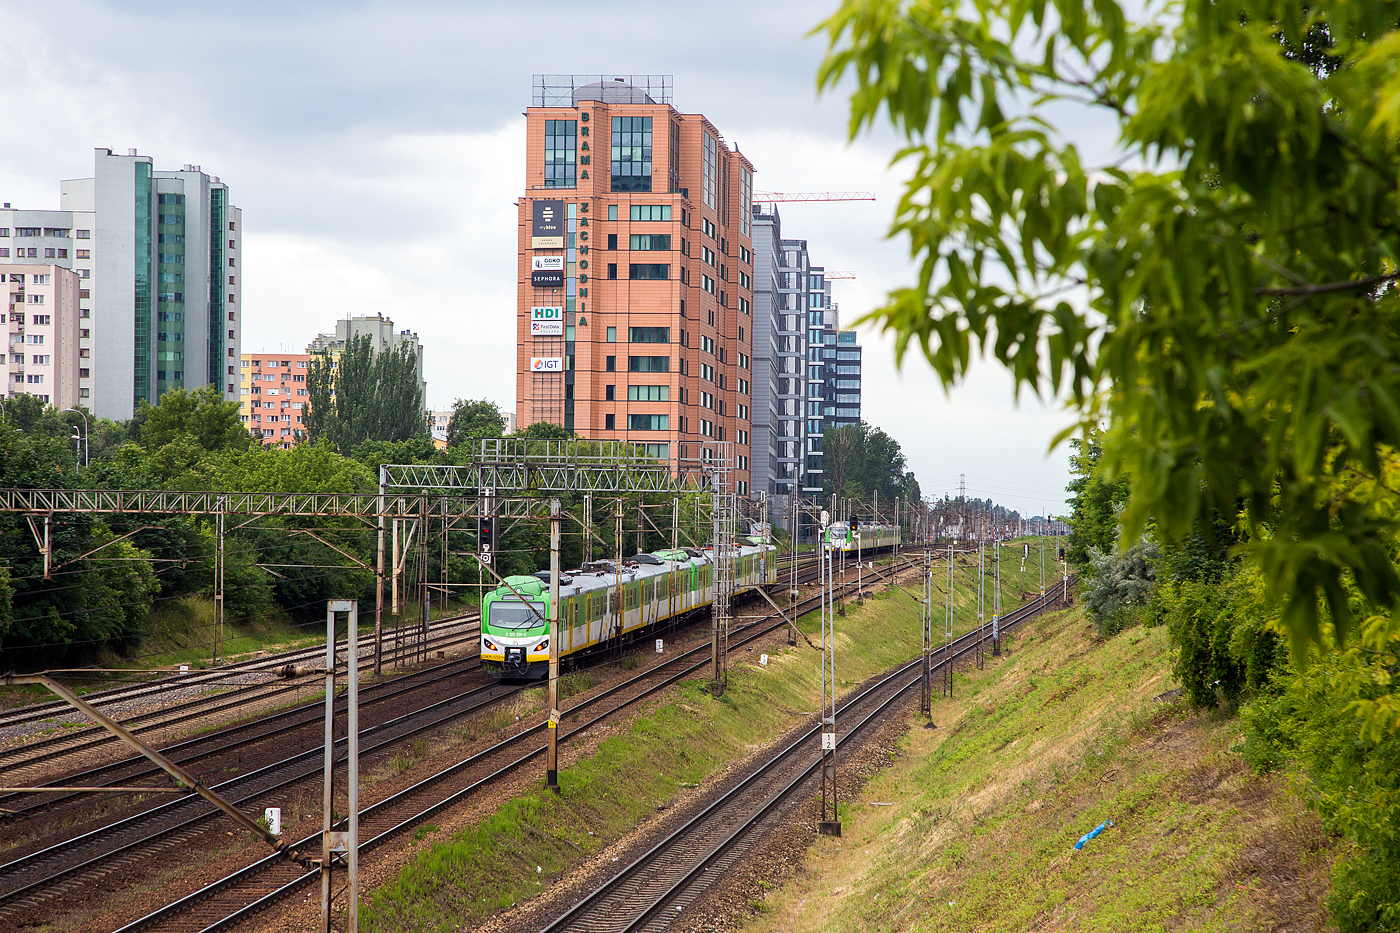 Zweigekuppelte dreiteilige elektrische Triebzüge, modernisierte Pafawag 5B/6B der Koleje Mazowieckie - KMKOL (Masowische Eisenbahnen), haben am 26 Juni 2017 den Bahnhof Warszawa Ochota (in Warschau) verlassen. Hier am Schluss der EN57AKM-1713 (2 120 501-3).

Die Koleje Mazowieckie (KM) führt  seit 2005 den Regionalverkehr in der Woiwodschaft Masowien auf dem Gleisnetz der PKP PLK durchführt. 
